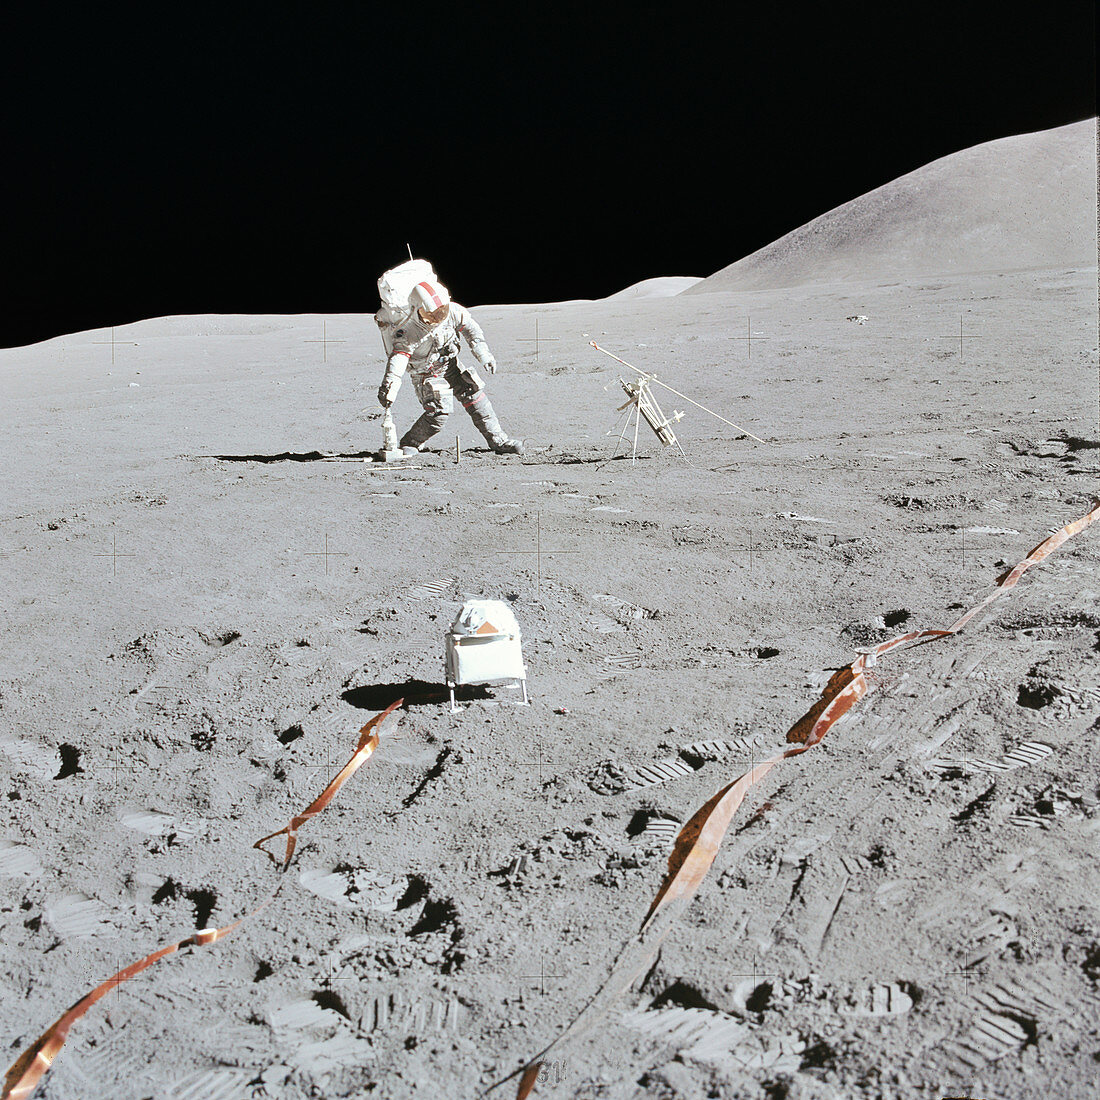 Apollo 15 lunar surface exploration,August 1971